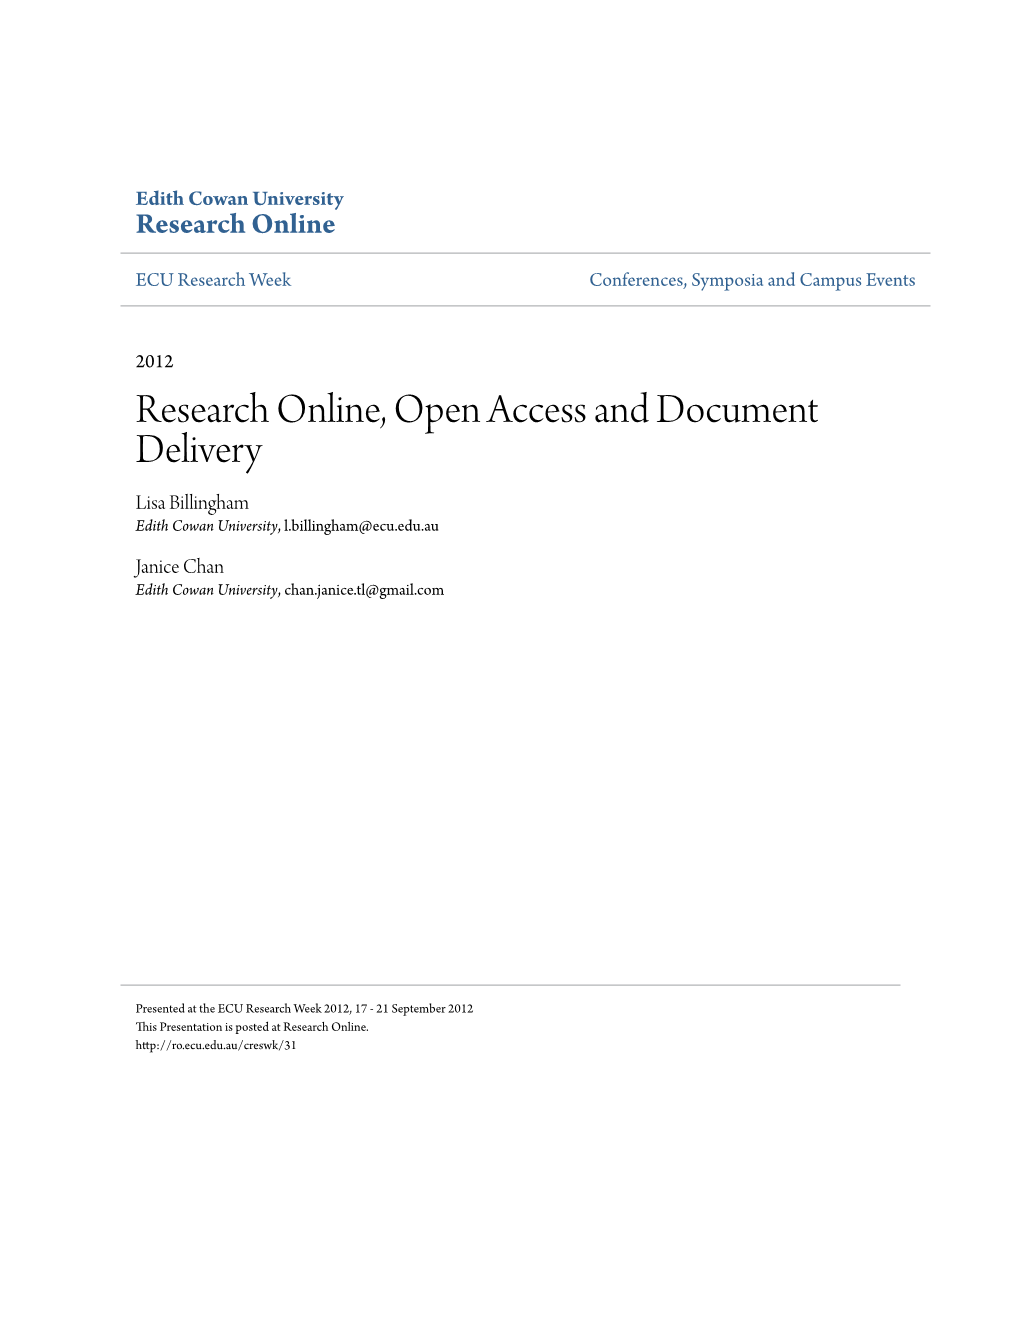 Research Online, Open Access and Document Delivery Lisa Billingham Edith Cowan University, L.Billingham@Ecu.Edu.Au